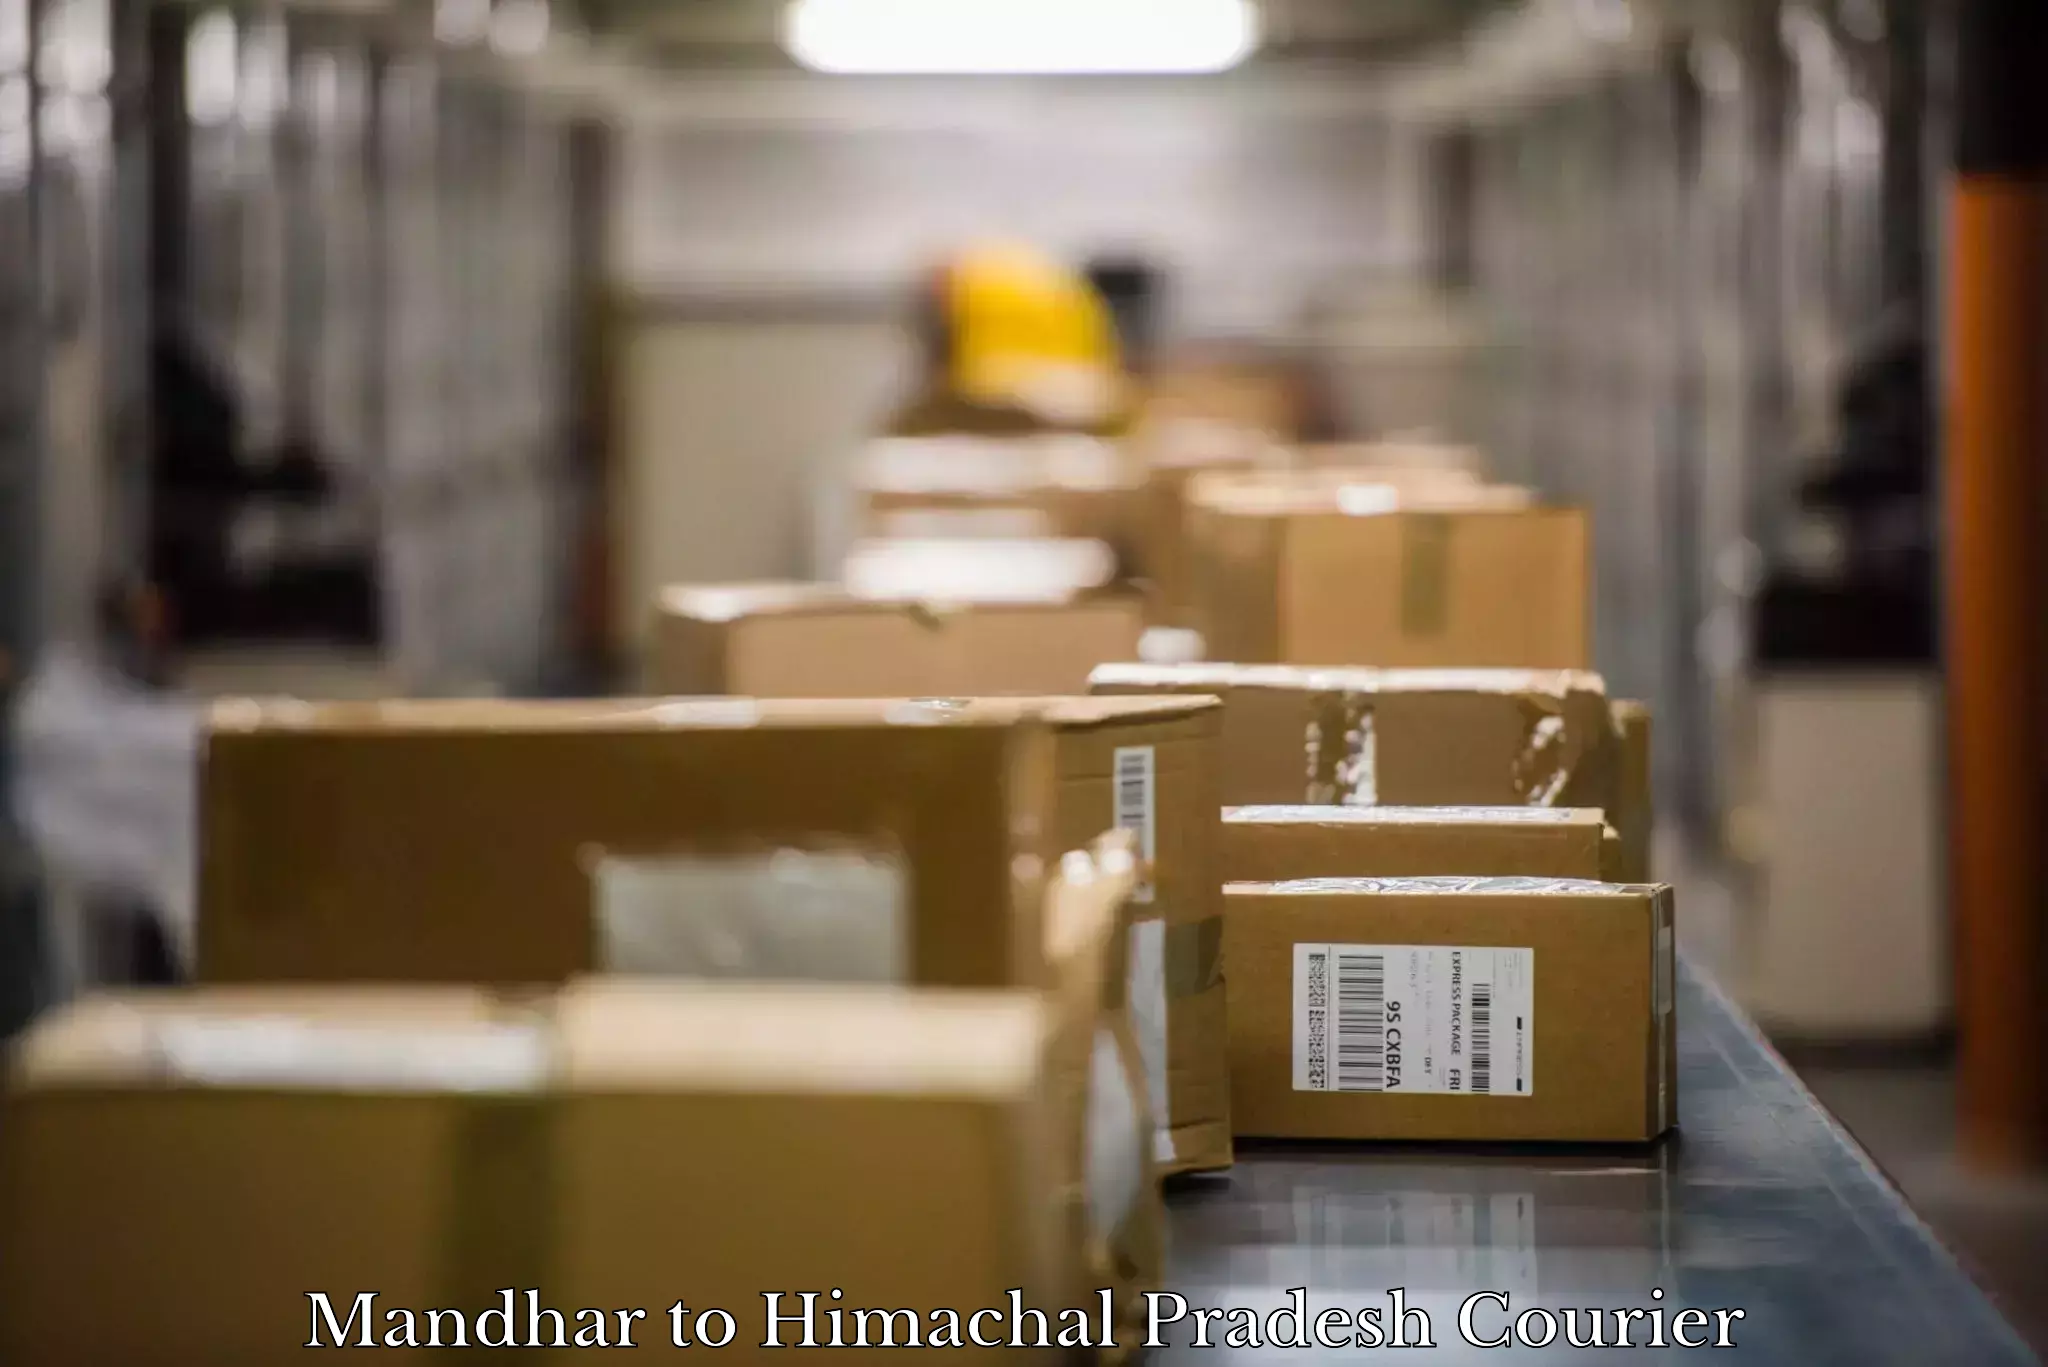 Furniture moving experts Mandhar to Himachal Pradesh